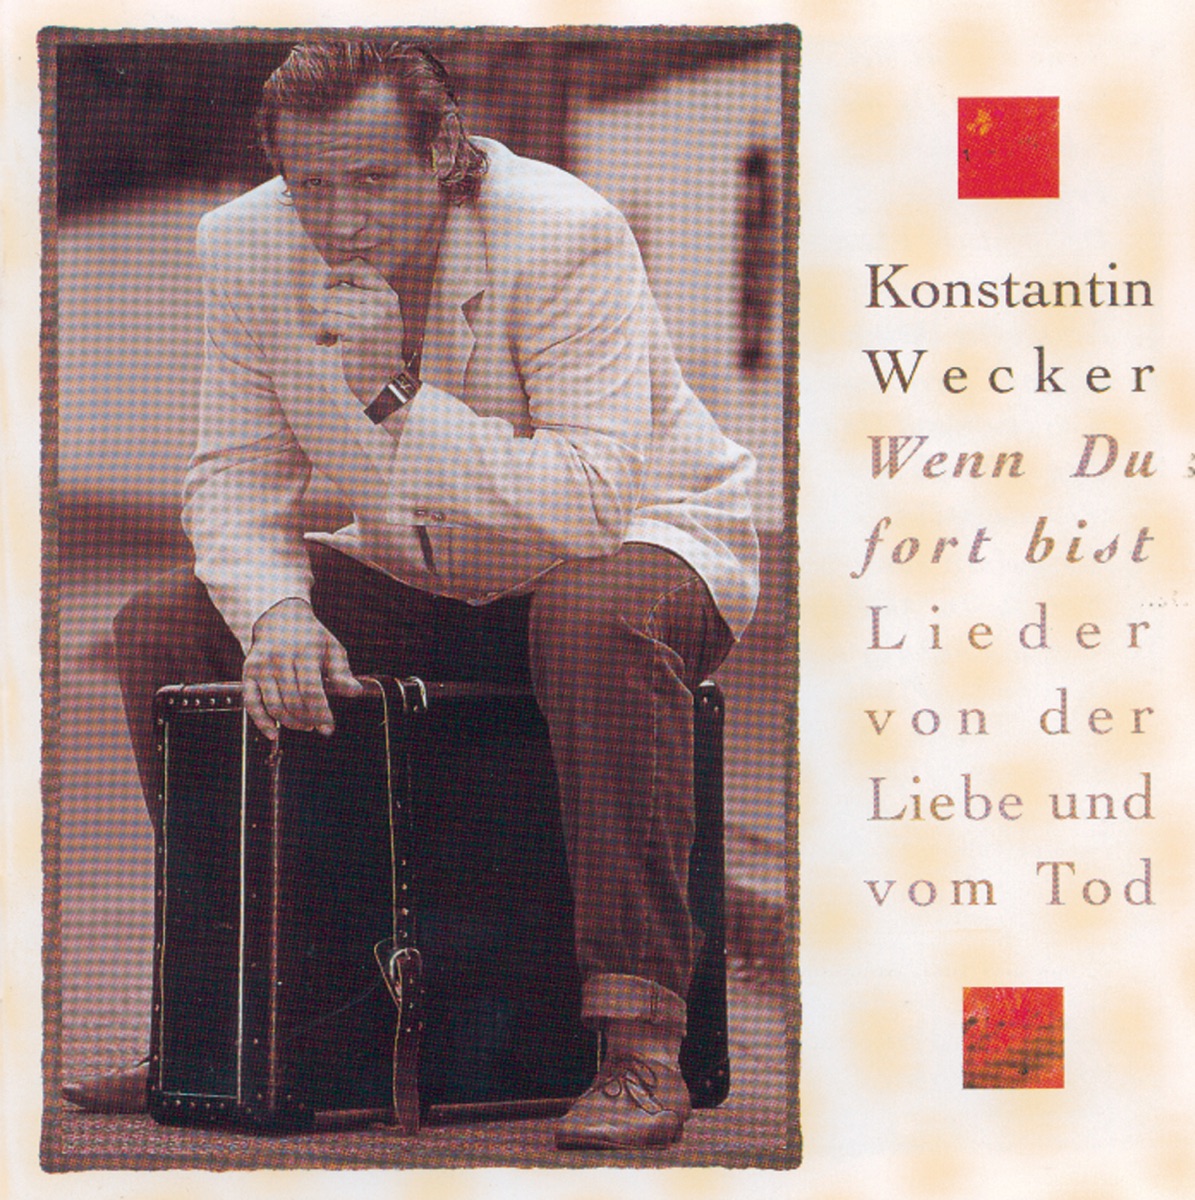 Wenn du fort bist - Lieder von der Liebe und vom Tod (2nd Edition) de  Konstantin Wecker en Apple Music